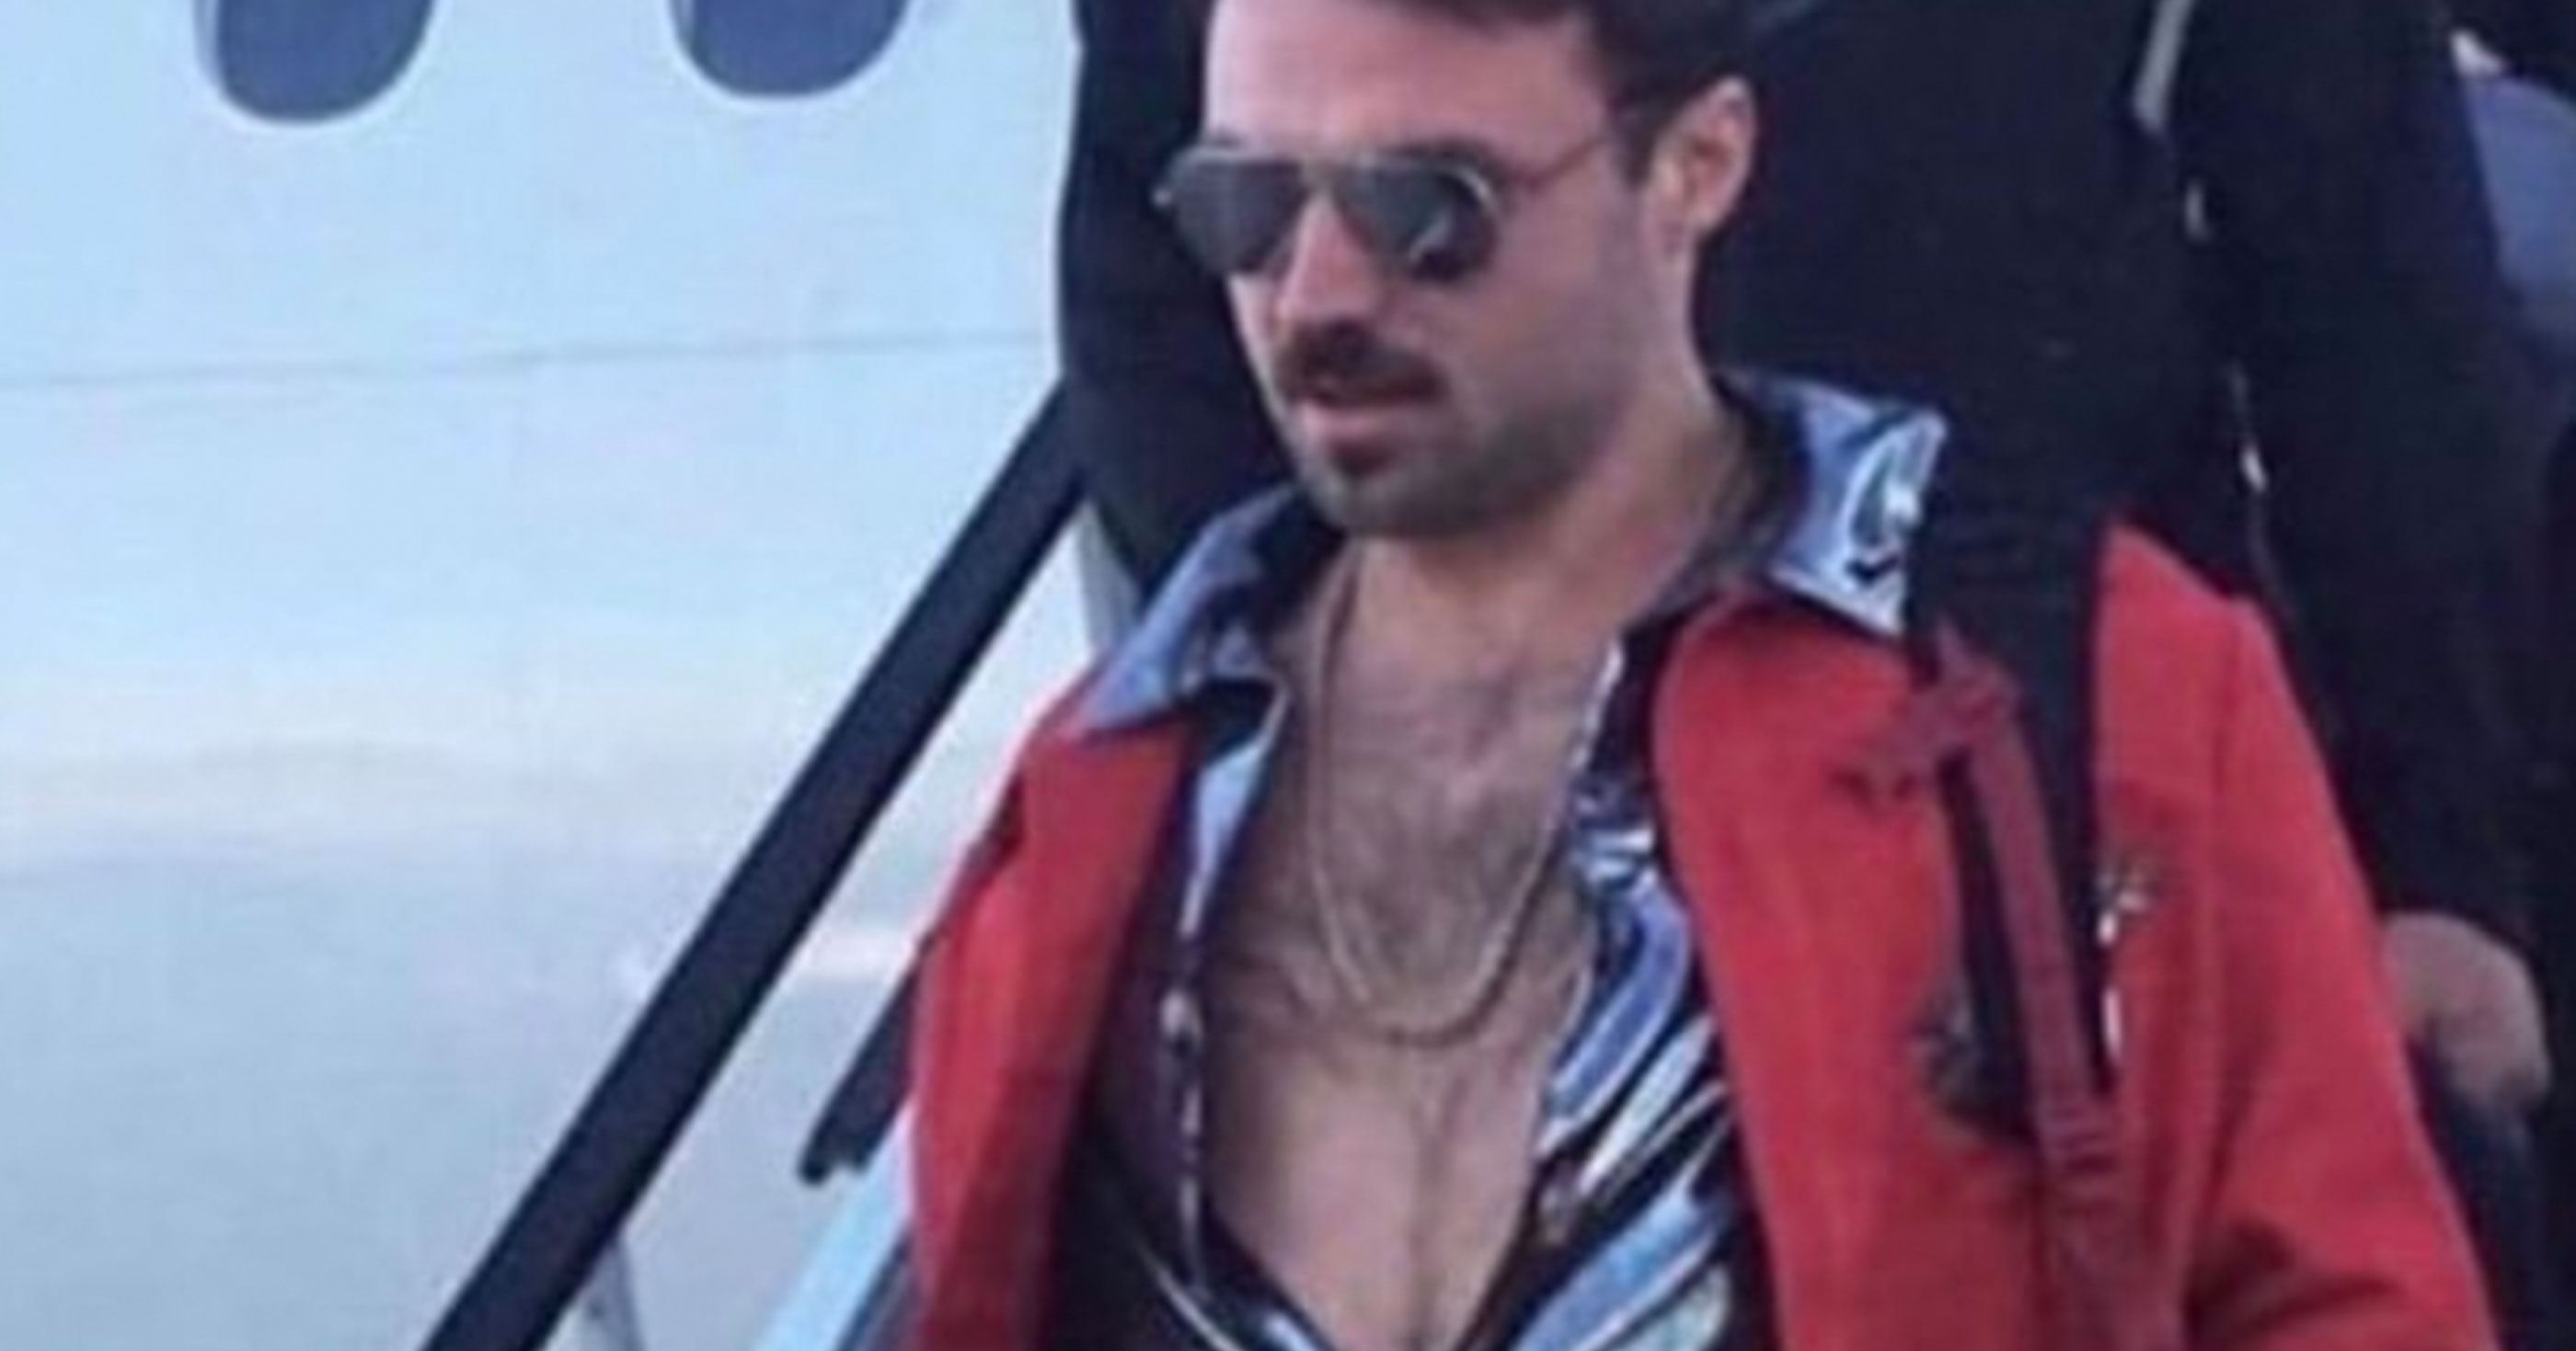 70s Porn Meme - Jaguars Rookie QB Gardner Minshew Gets Off Plane For Game ...